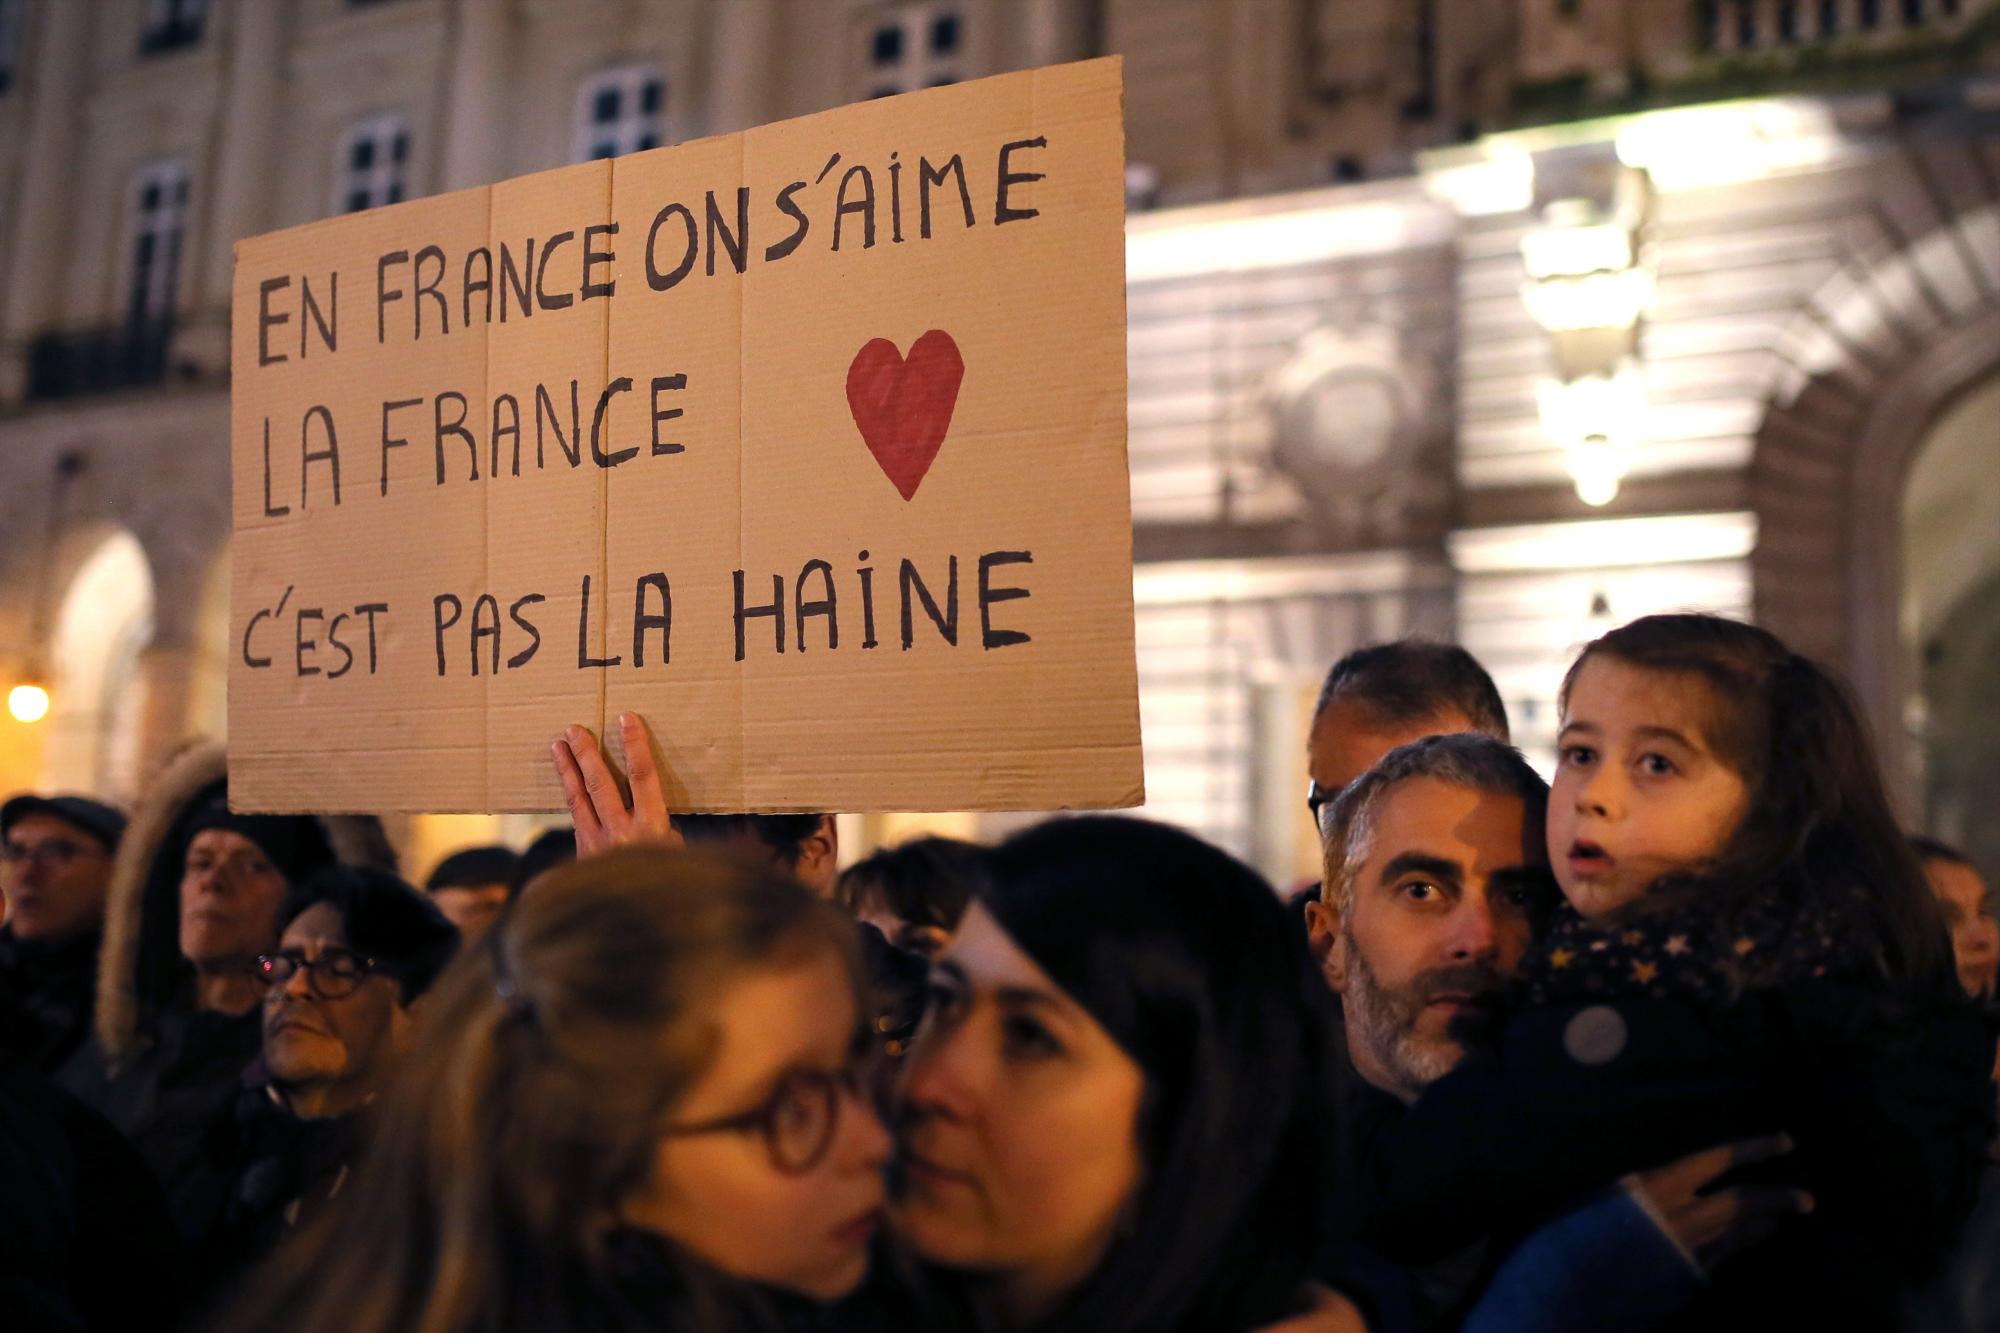 Los manifestantes contra el antisemitismo se reúnen en Rennes, oeste de Francia. La pancarta dice: “En Francia, nos amamos unos a otros. Francia no es odio”.